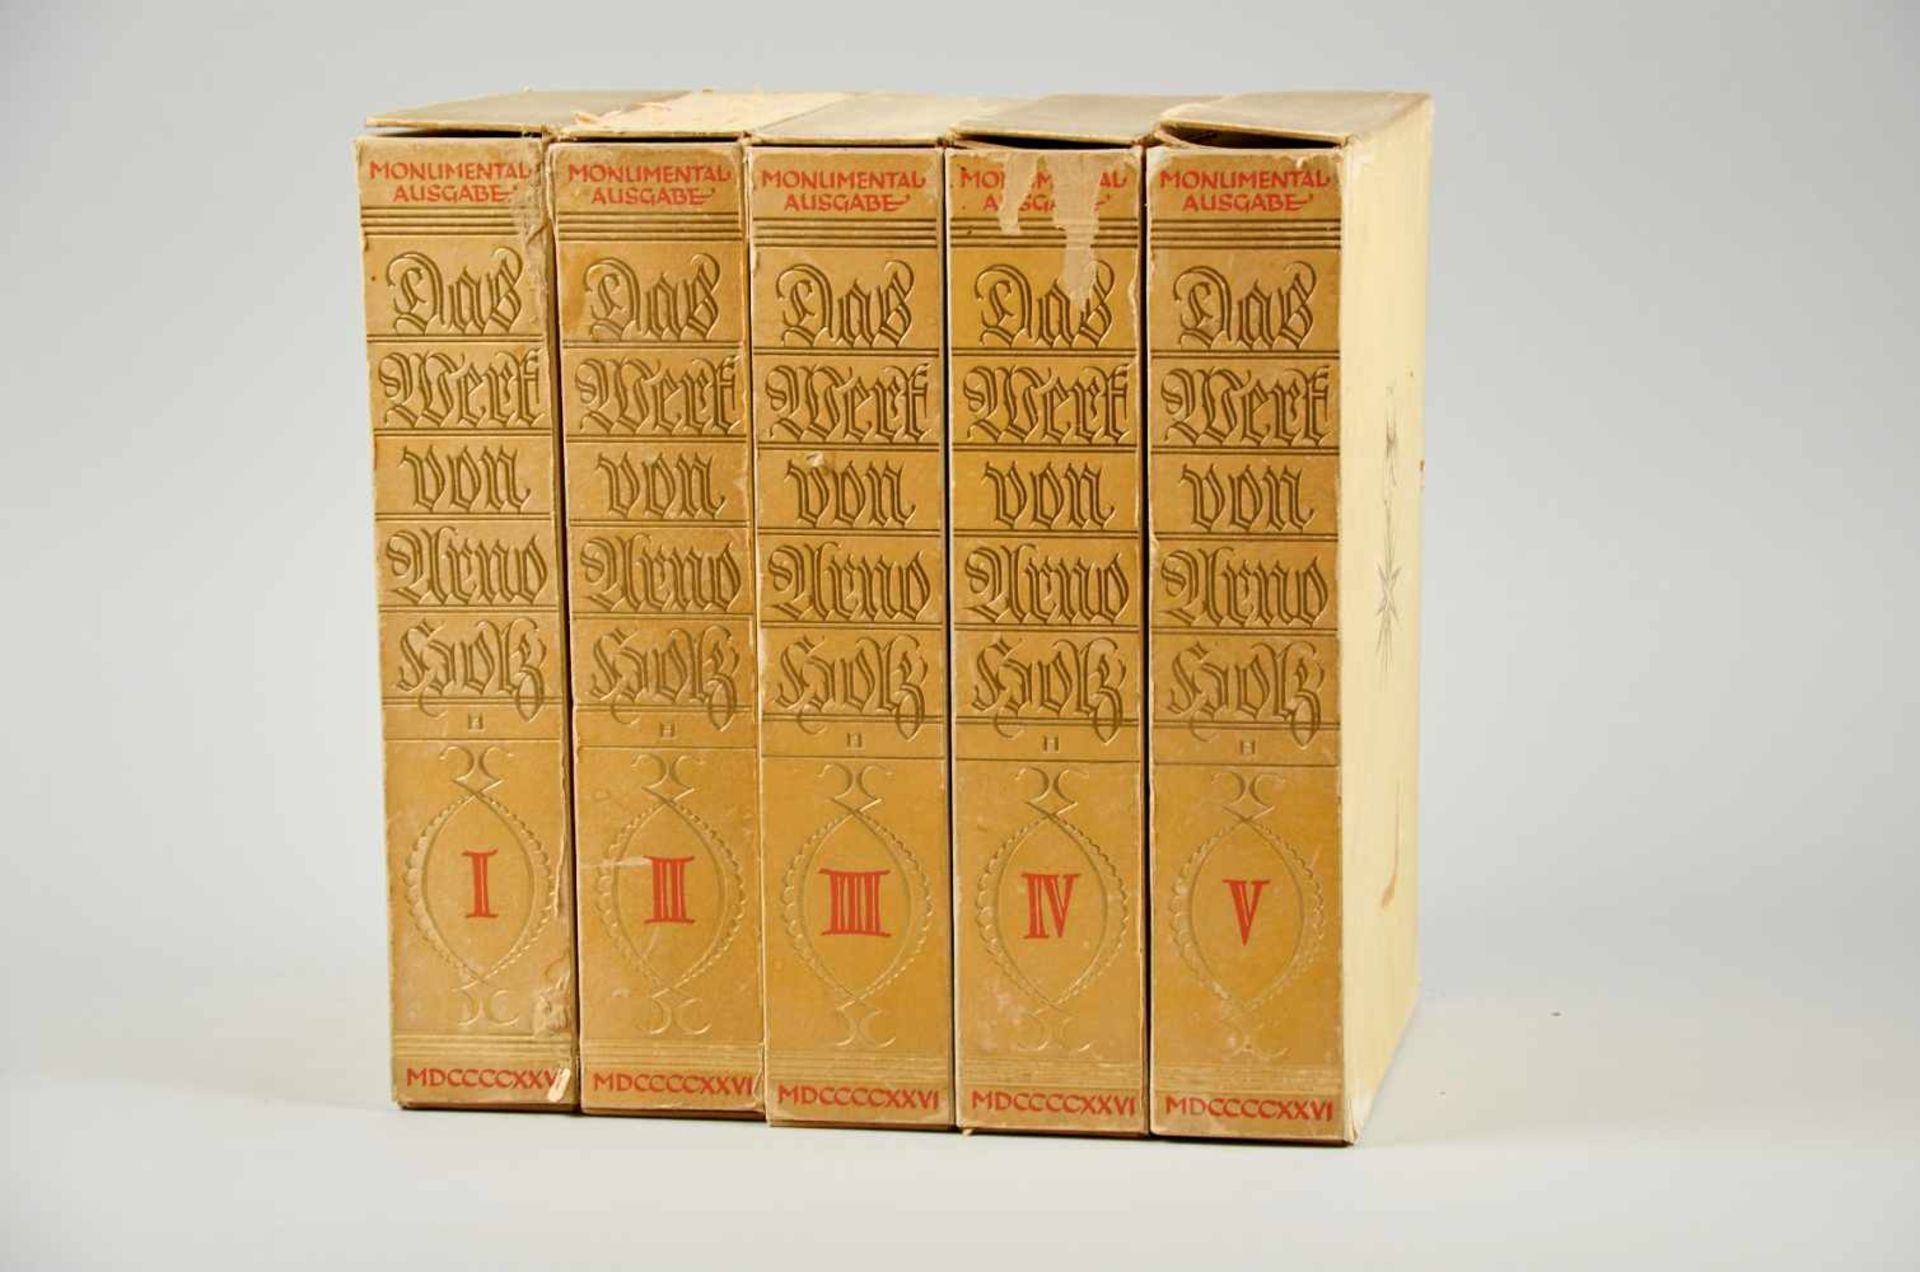 Holz, A., Das Werk. Monumental-Ausgabe in 12 Bdn.Berlin, Holten, 1926. Gr.-4°. Mit 12 (11 rad.)